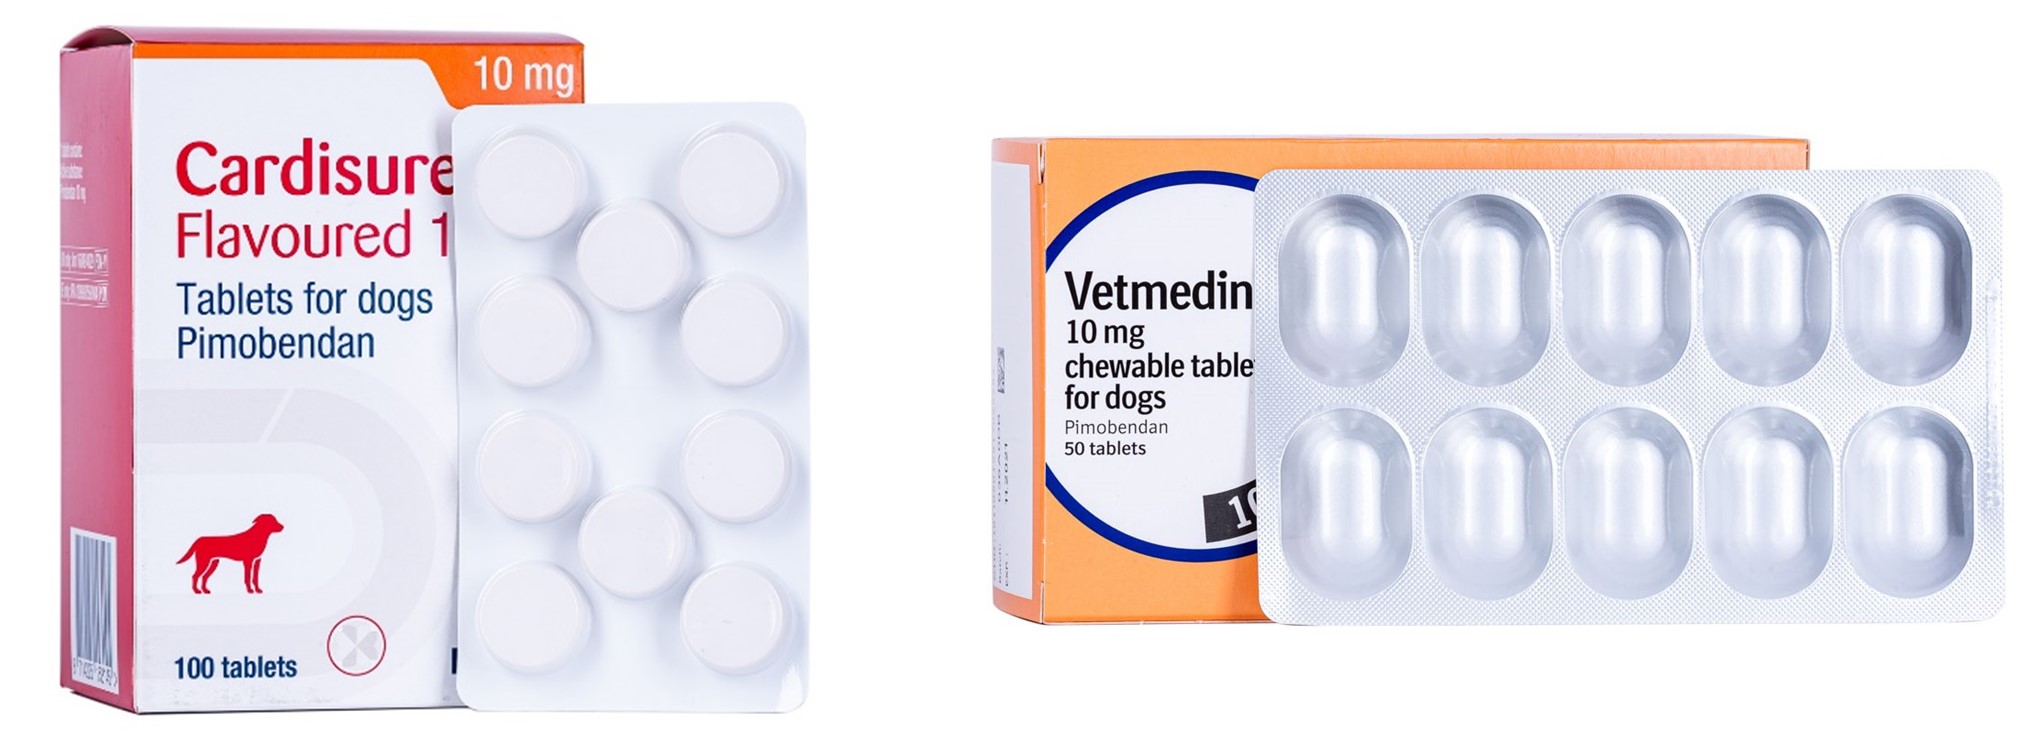 Một số thuốc pimobendan thương mại do Dechra (Cardisure) và Boehringer Ingelheim (Vetmedin) sản xuất được dùng trong điều trị bệnh thoái hoá van hai lá trên chó